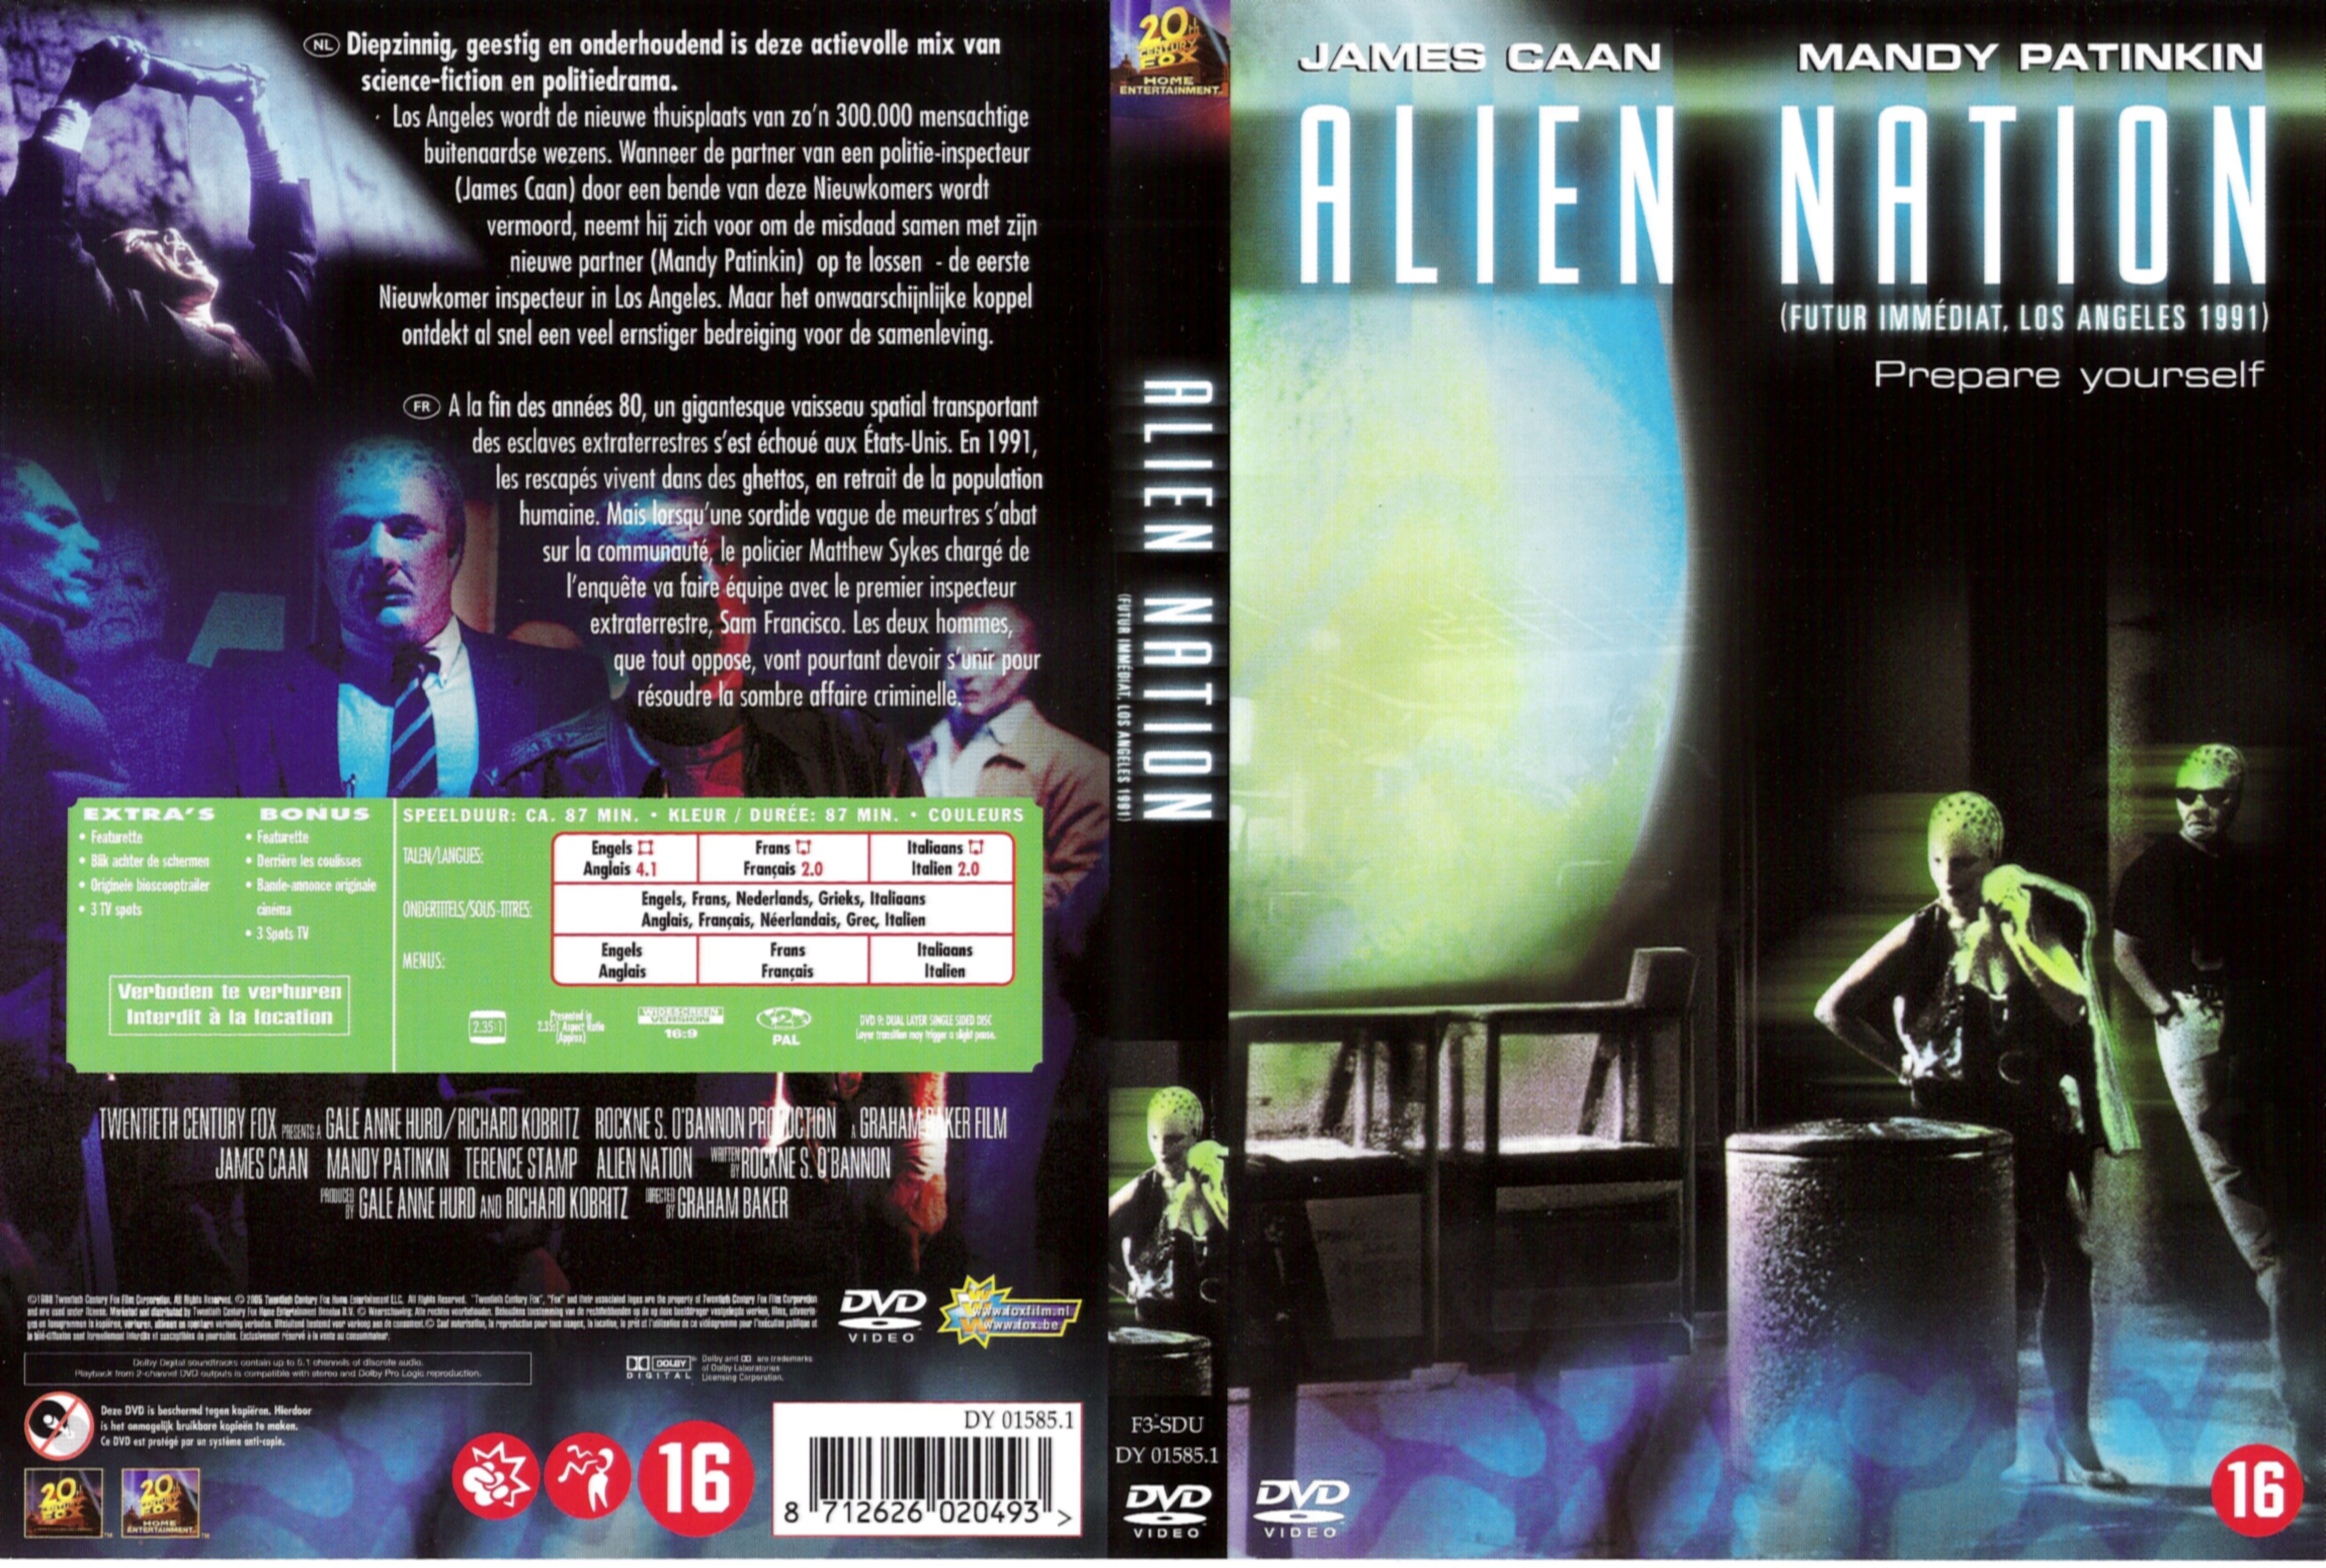 Jaquette DVD Alien nation